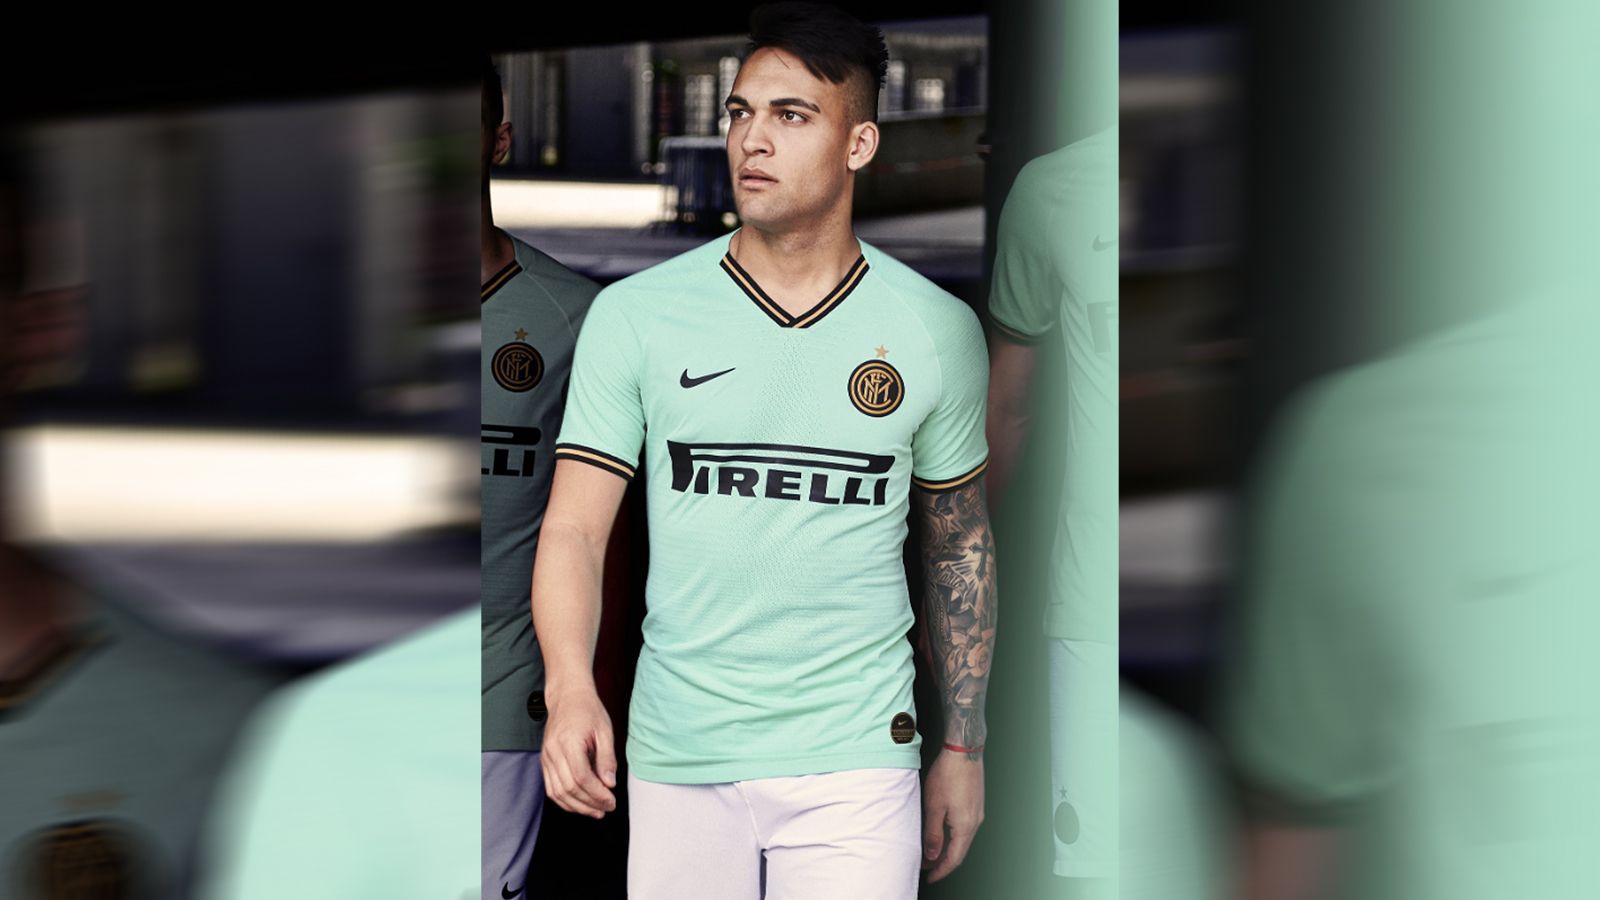 
                <strong>Inter Mailand</strong><br>
                Das Auswärtstrikot von Inter Mailand für die Saison 2019/20 wurde in Aquamarin gestaltet. Die Farbe wurde in Anlehnung an die Kostbarkeit und Eleganz Mailand ausgewählt, wie der Verein auf der Homepage erklärte. Komplettiert wird Inters Auswärts-Outift durch weiße Hosen und halb-grünen, halb-weißen Stutzen.
              